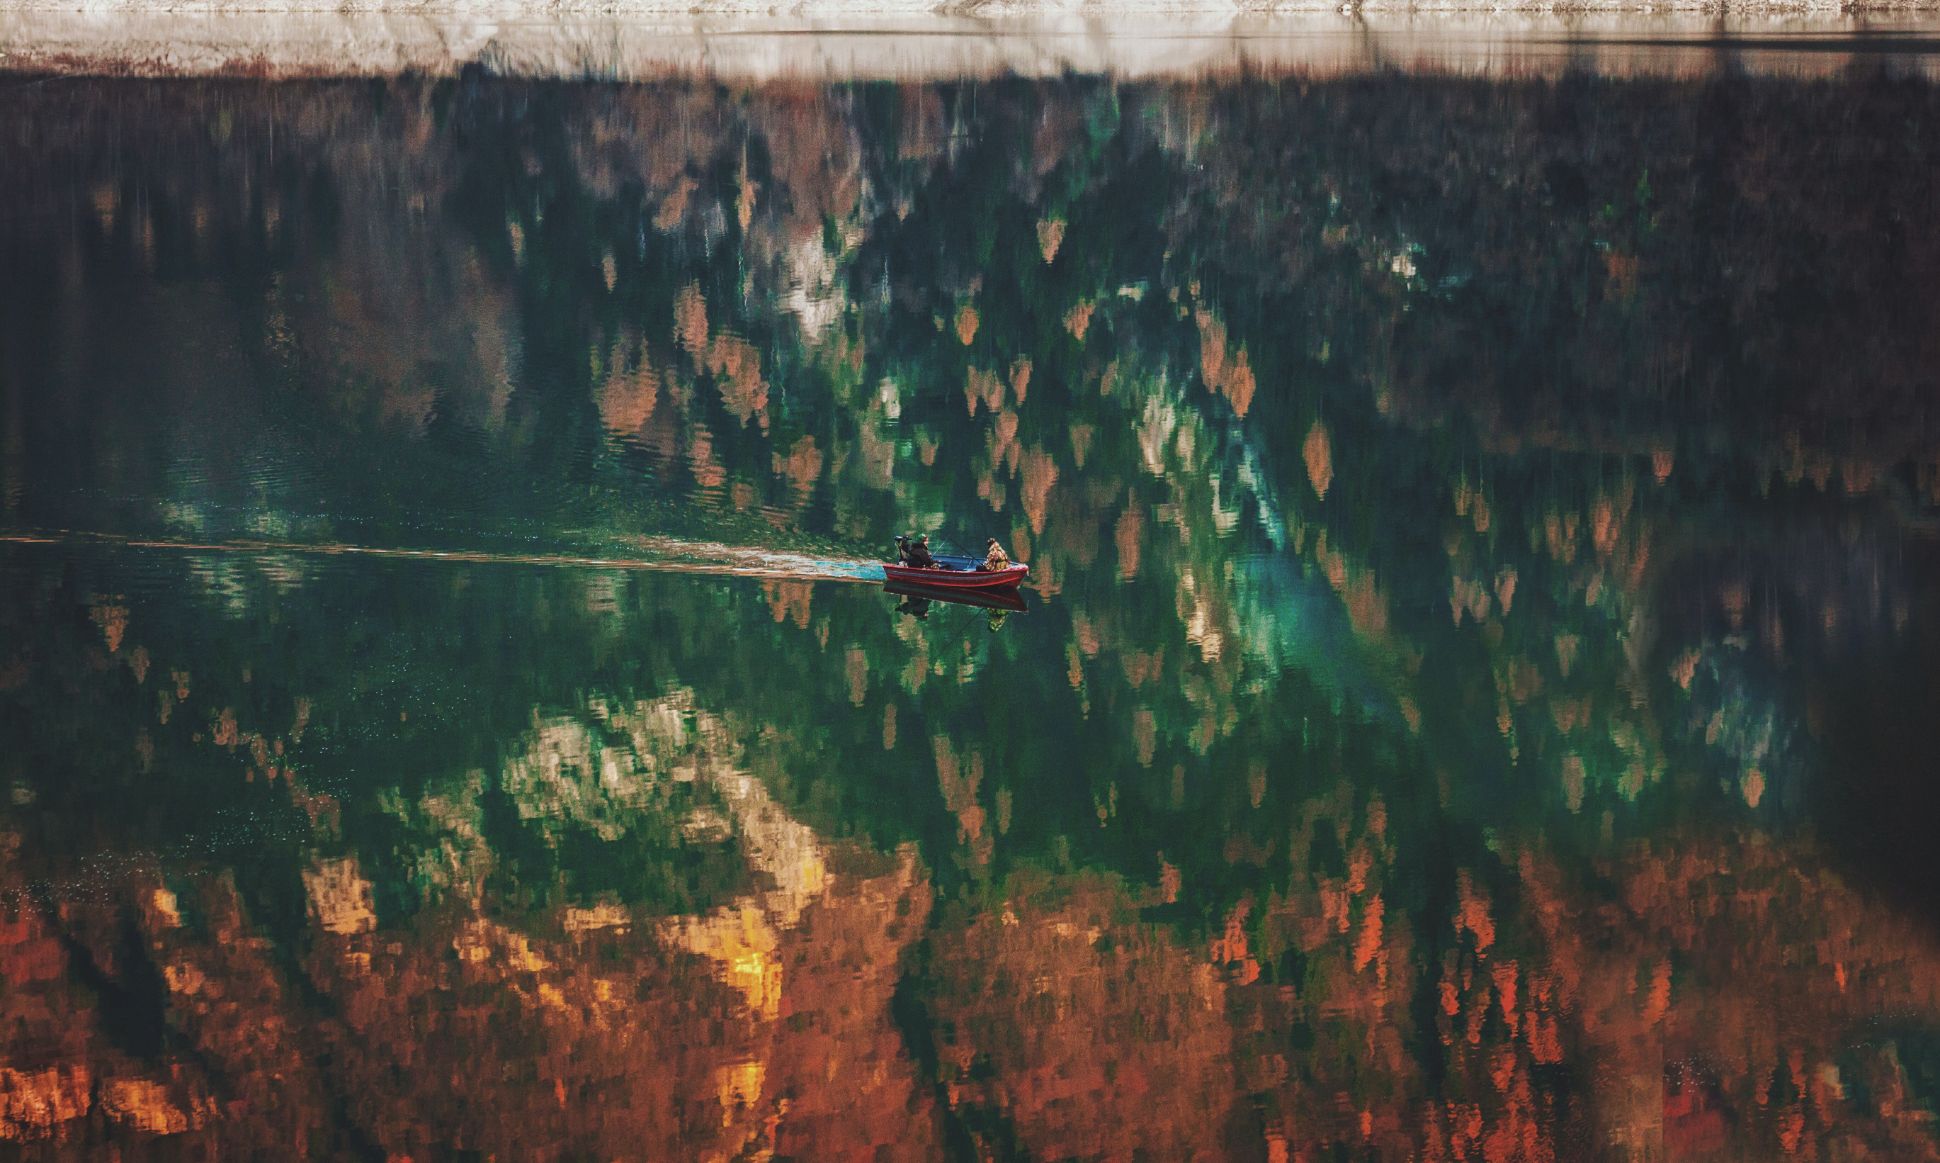 Zwei Personen in einem kleinen Boot auf dem Wasser mit Spiegelung der Herbstbäume.